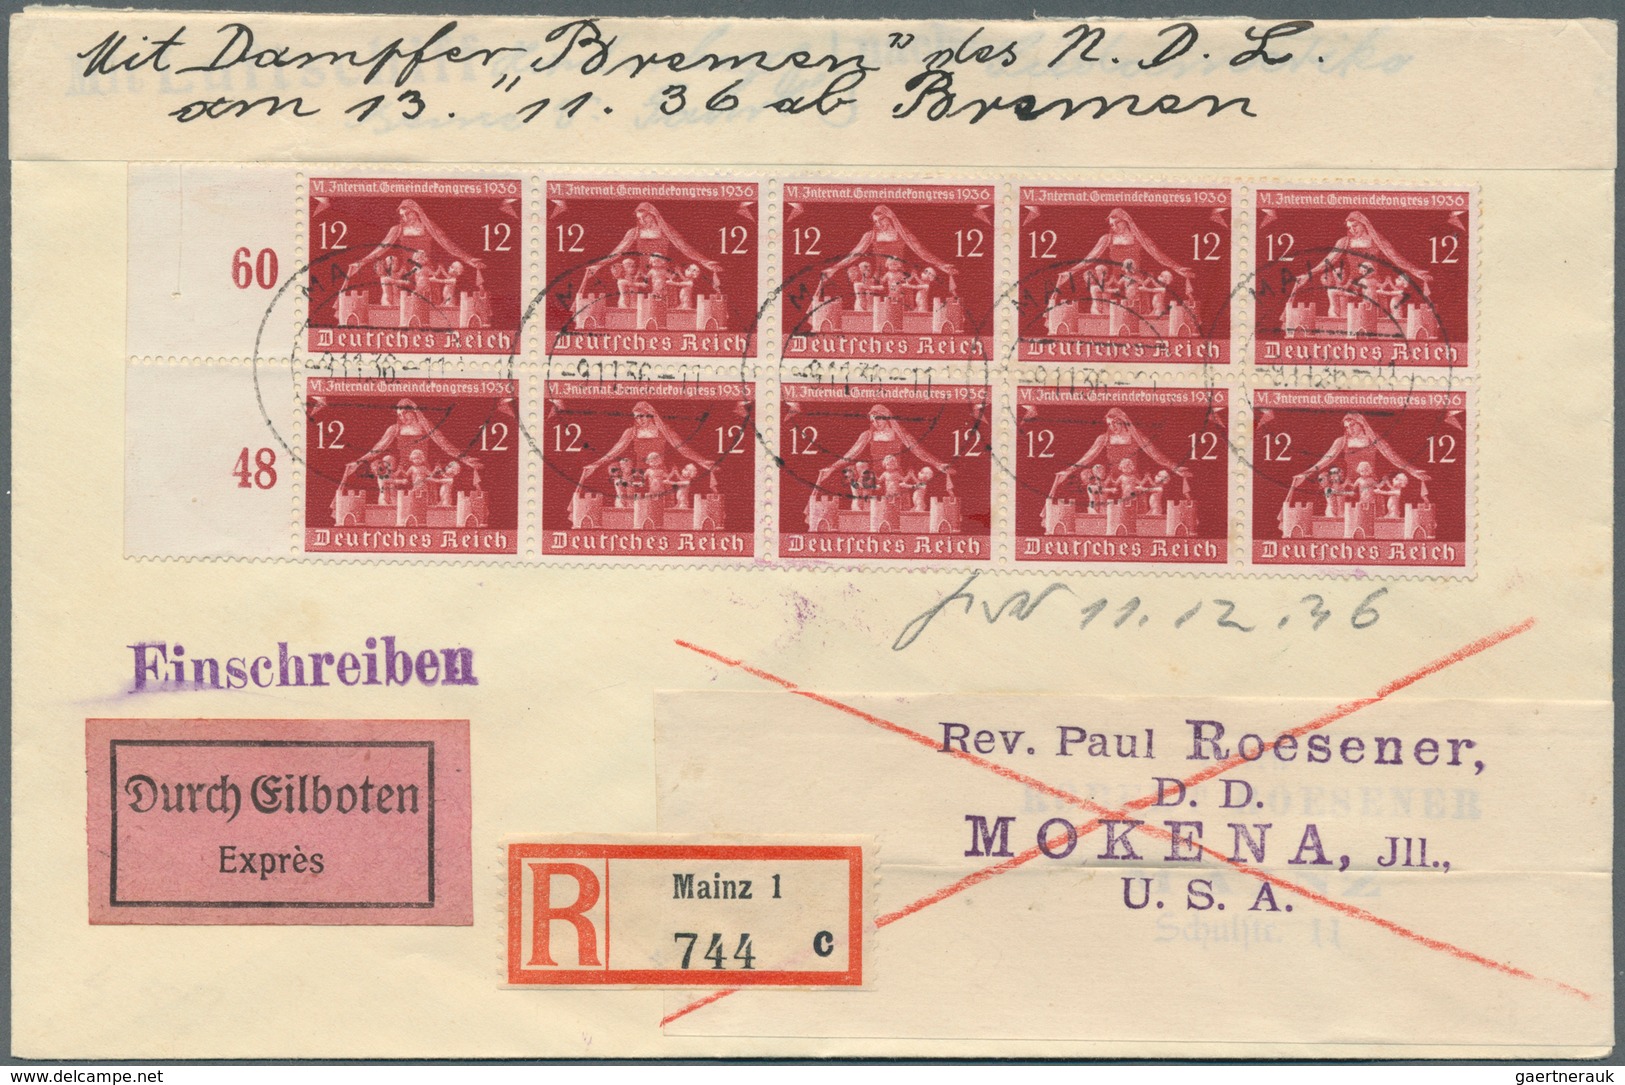 Deutsches Reich - 3. Reich: 1933-1945, Posten mit rund 450 Briefen und Belegen, dabei Flugpost, Dien